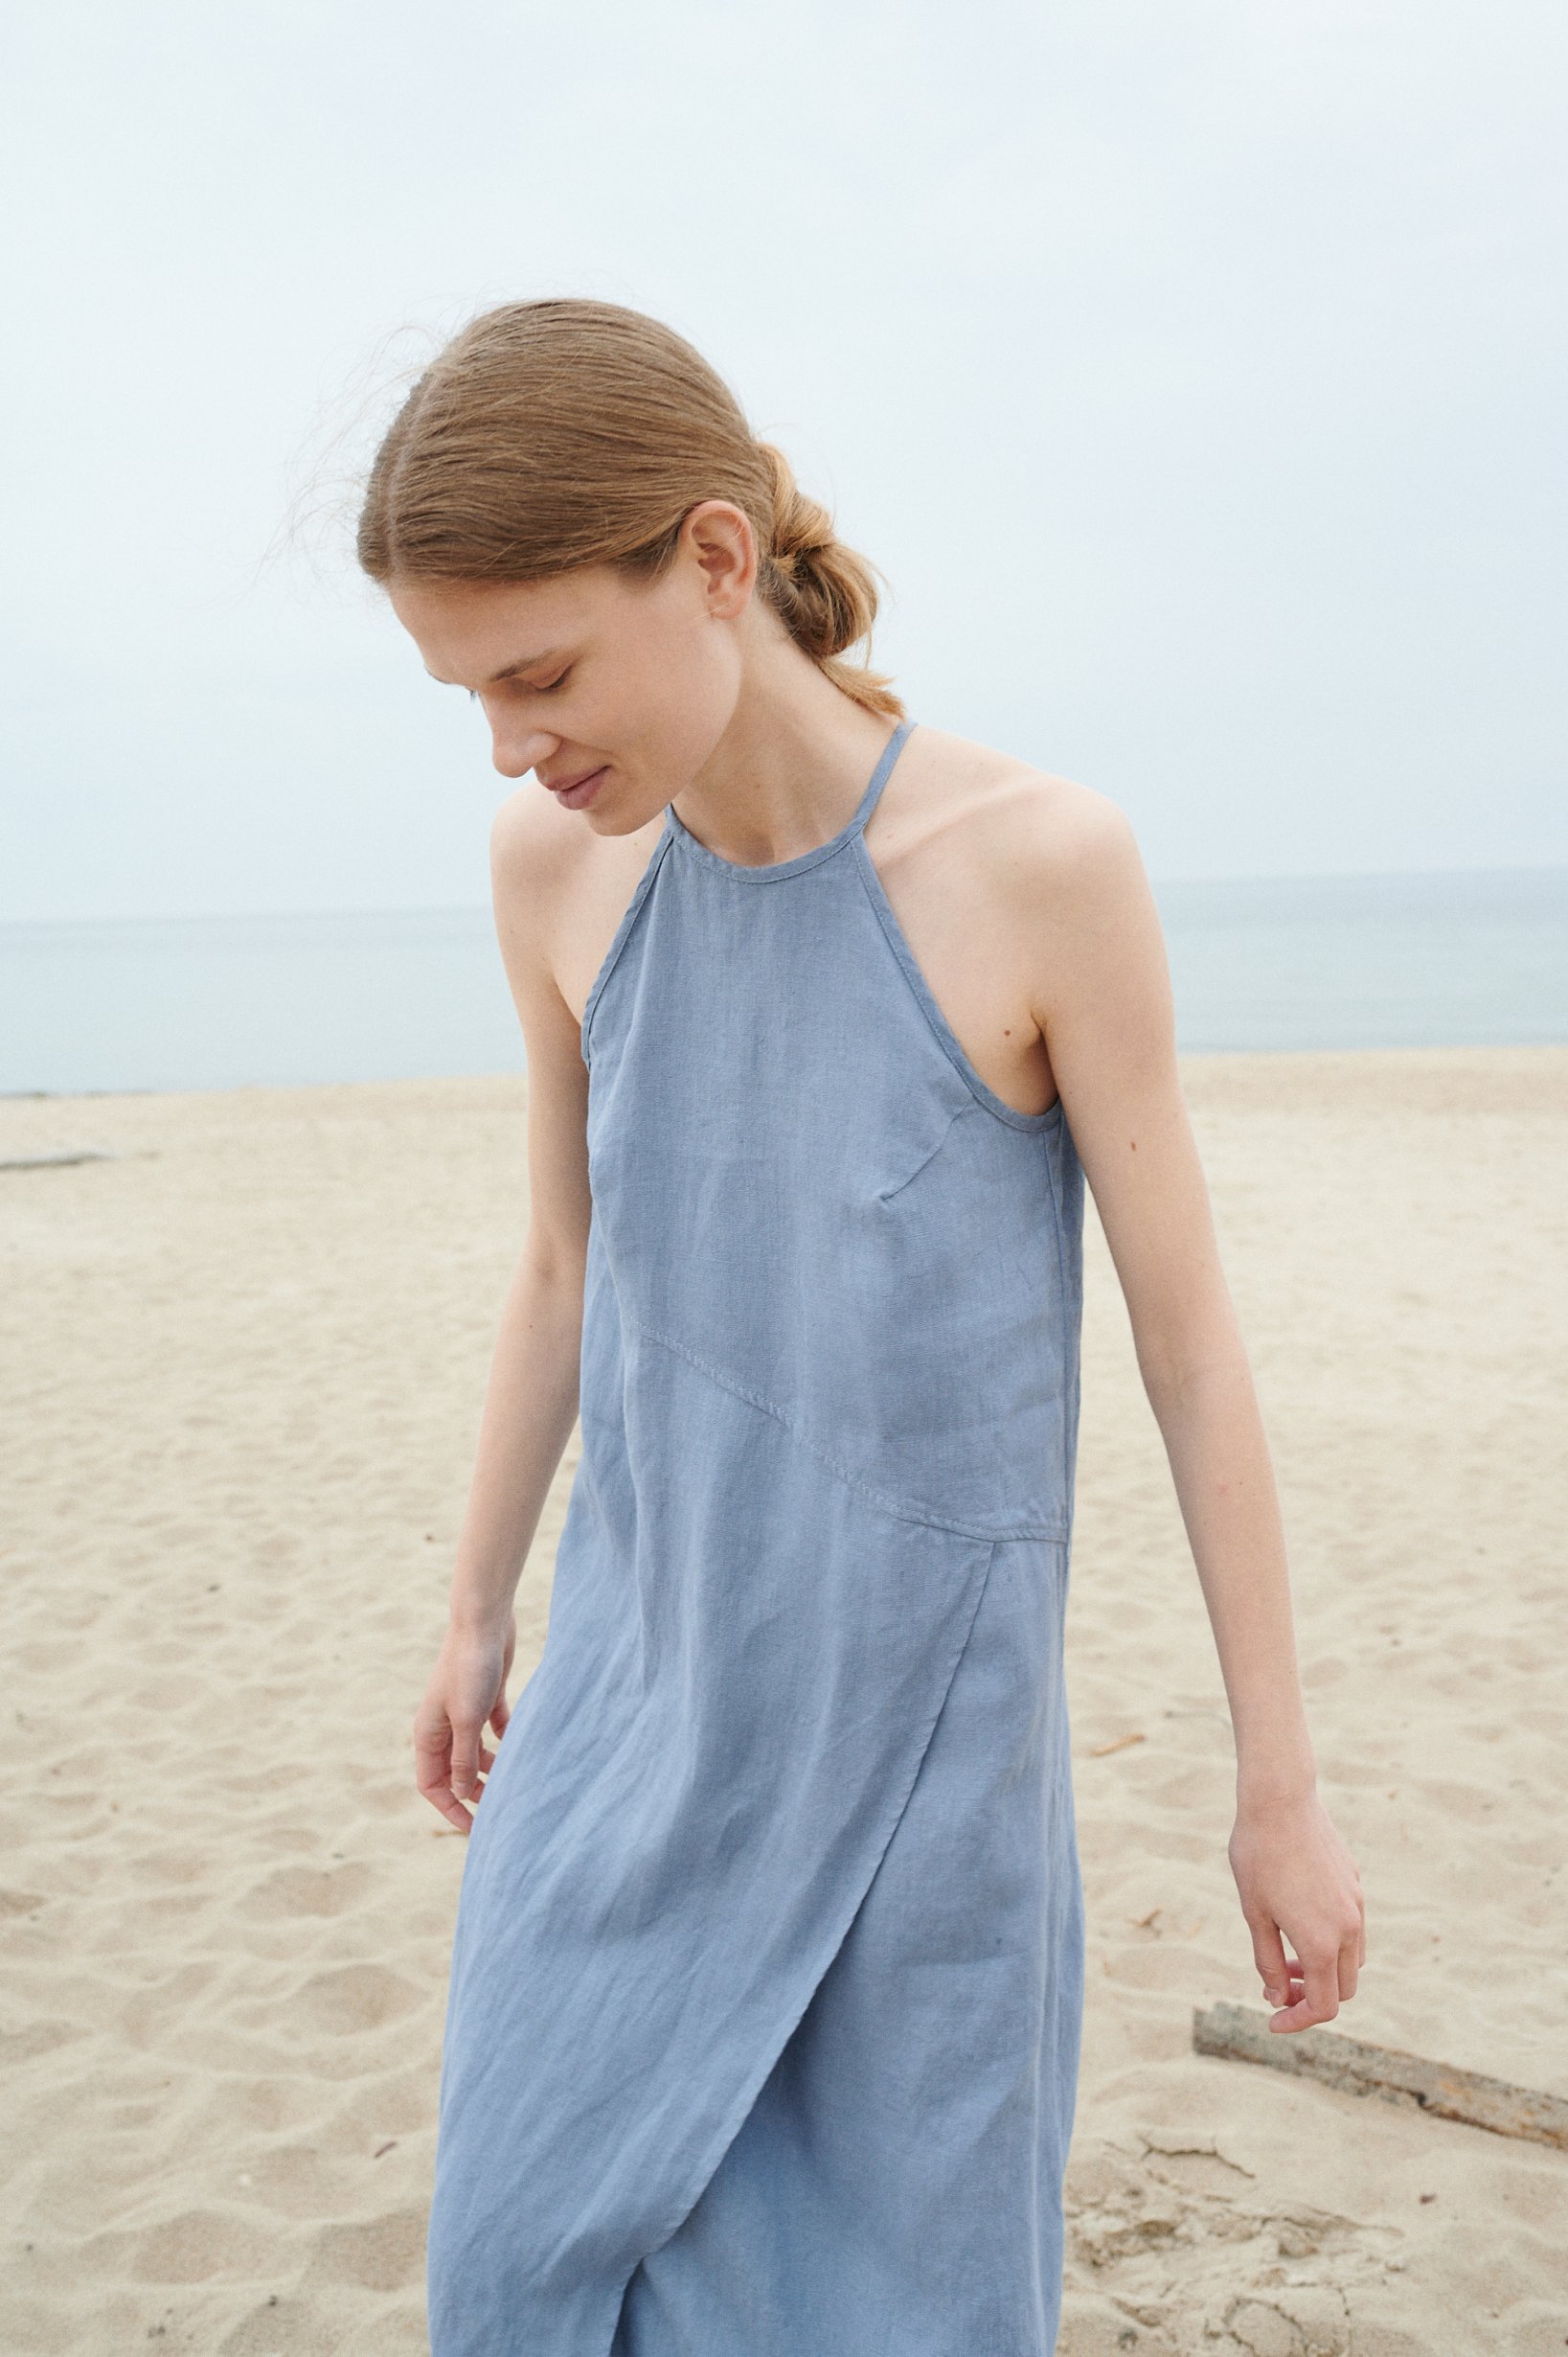 A muted blue linen summer dress with a halter neck